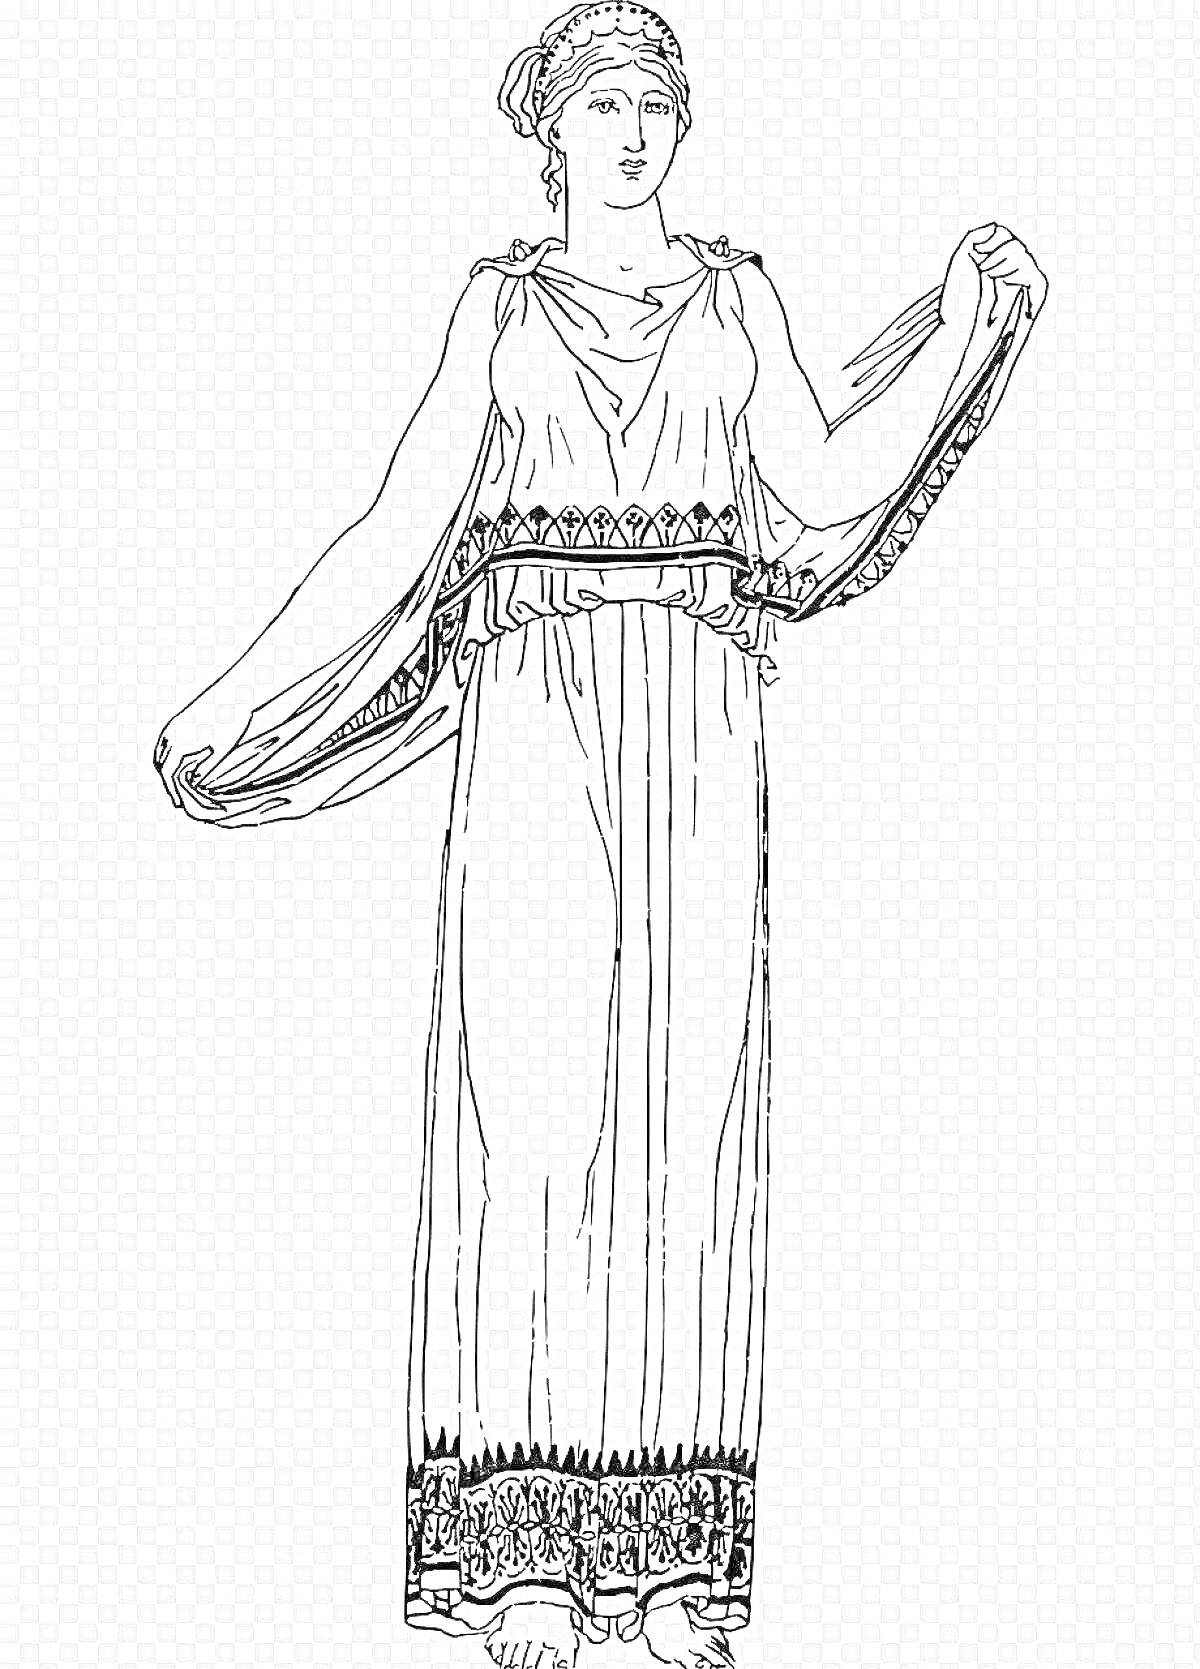 Раскраска Женщина в длинном хитоне с поясом на талии и декоративной каймой внизу